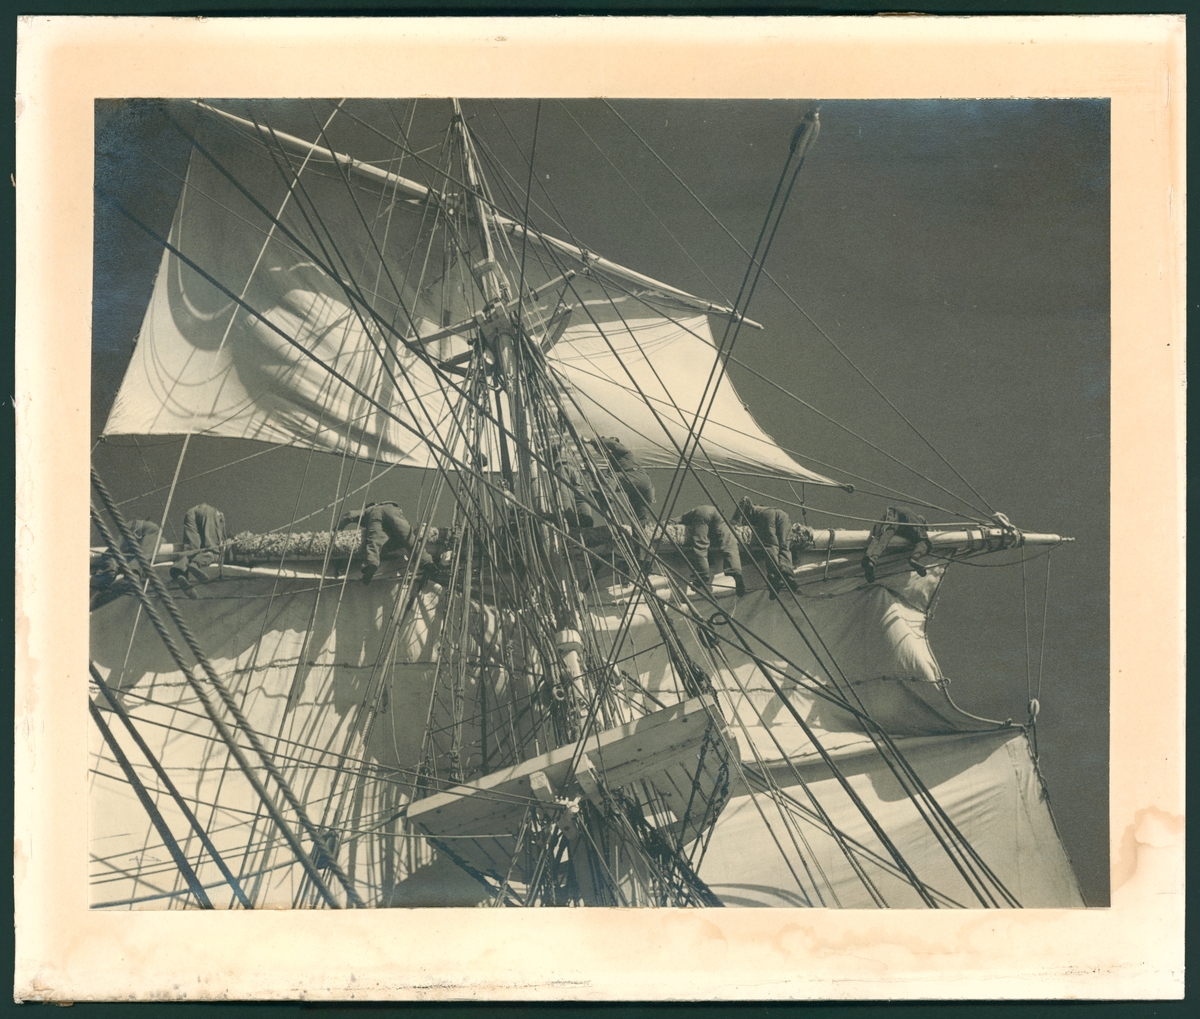 Bilden visar verksamhet ombord på skeppsgossefartyget Jarramas. Manskapet har klättrat upp på riggen och håller på att sätta eller bärga segel.
Fotot är taget under något av åren 1940-talet, då fartyget var bemannat av elever från Sjömannsskolan.